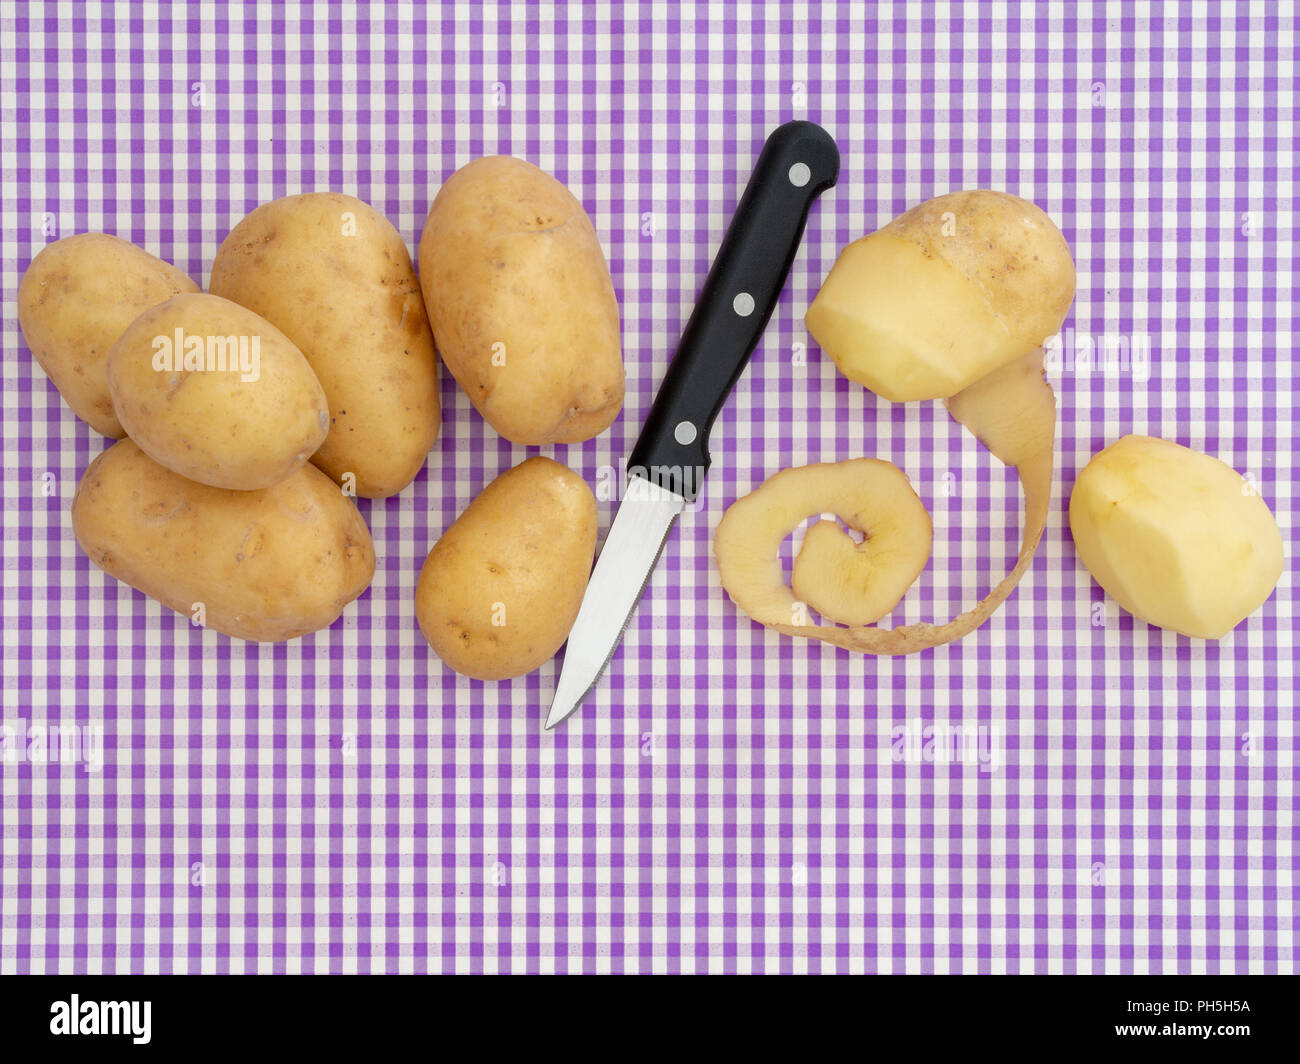 Zubereitung von Speisen, Schälen von Kartoffeln auf den Purple gingham Oberfläche. Mit Messer, Ansicht von oben mit Copyspace. Retro Design. Stockfoto